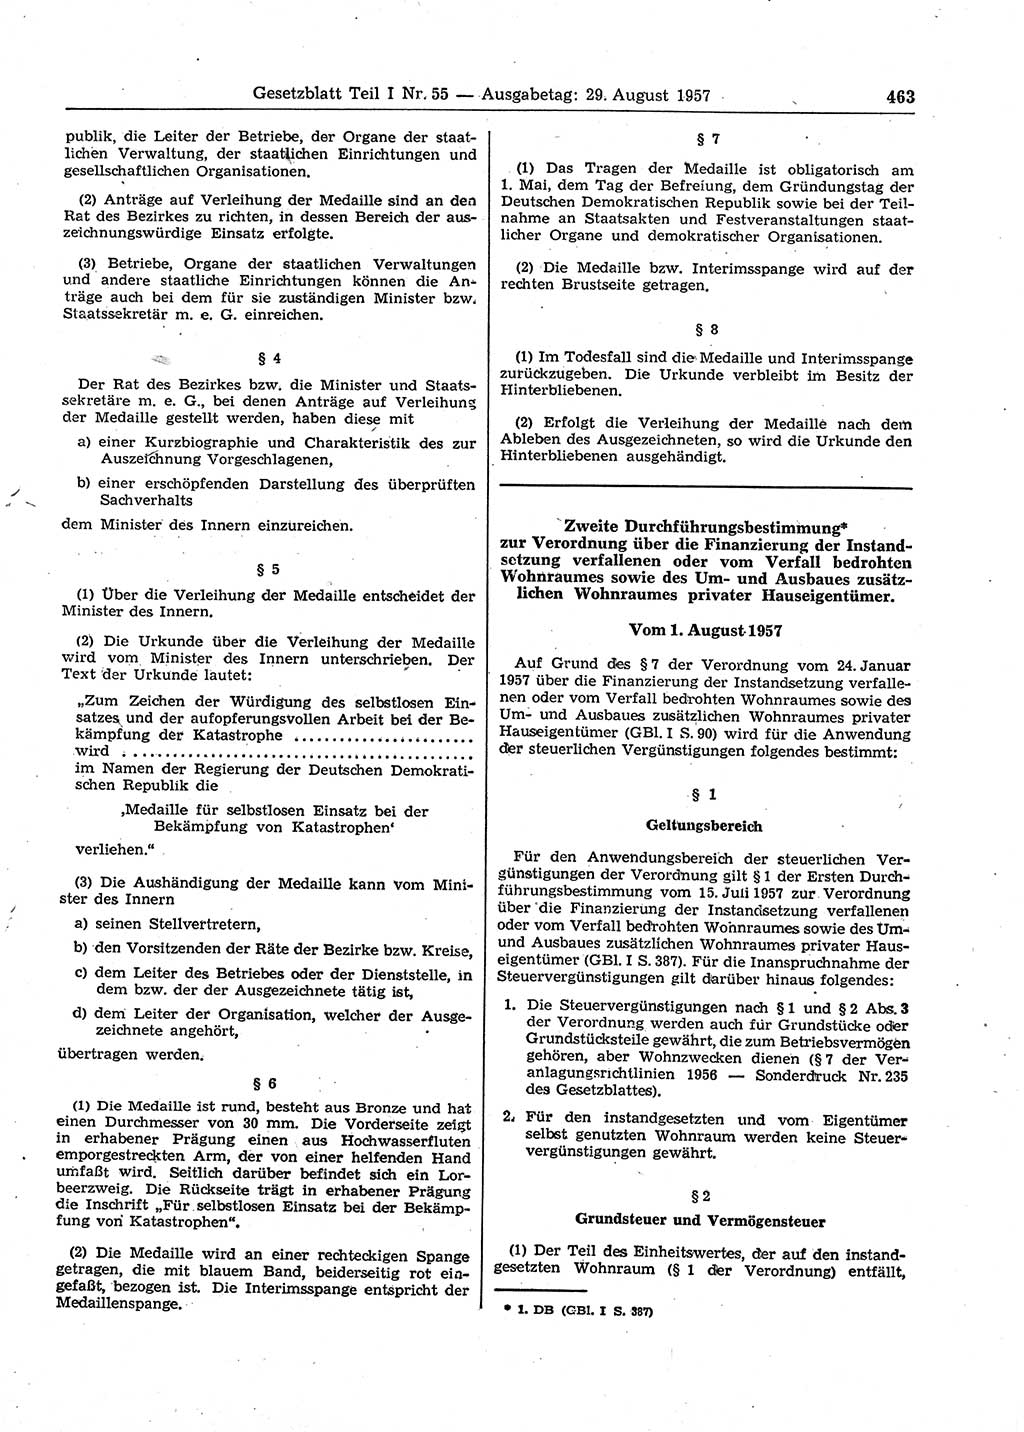 Gesetzblatt (GBl.) der Deutschen Demokratischen Republik (DDR) Teil Ⅰ 1957, Seite 463 (GBl. DDR Ⅰ 1957, S. 463)